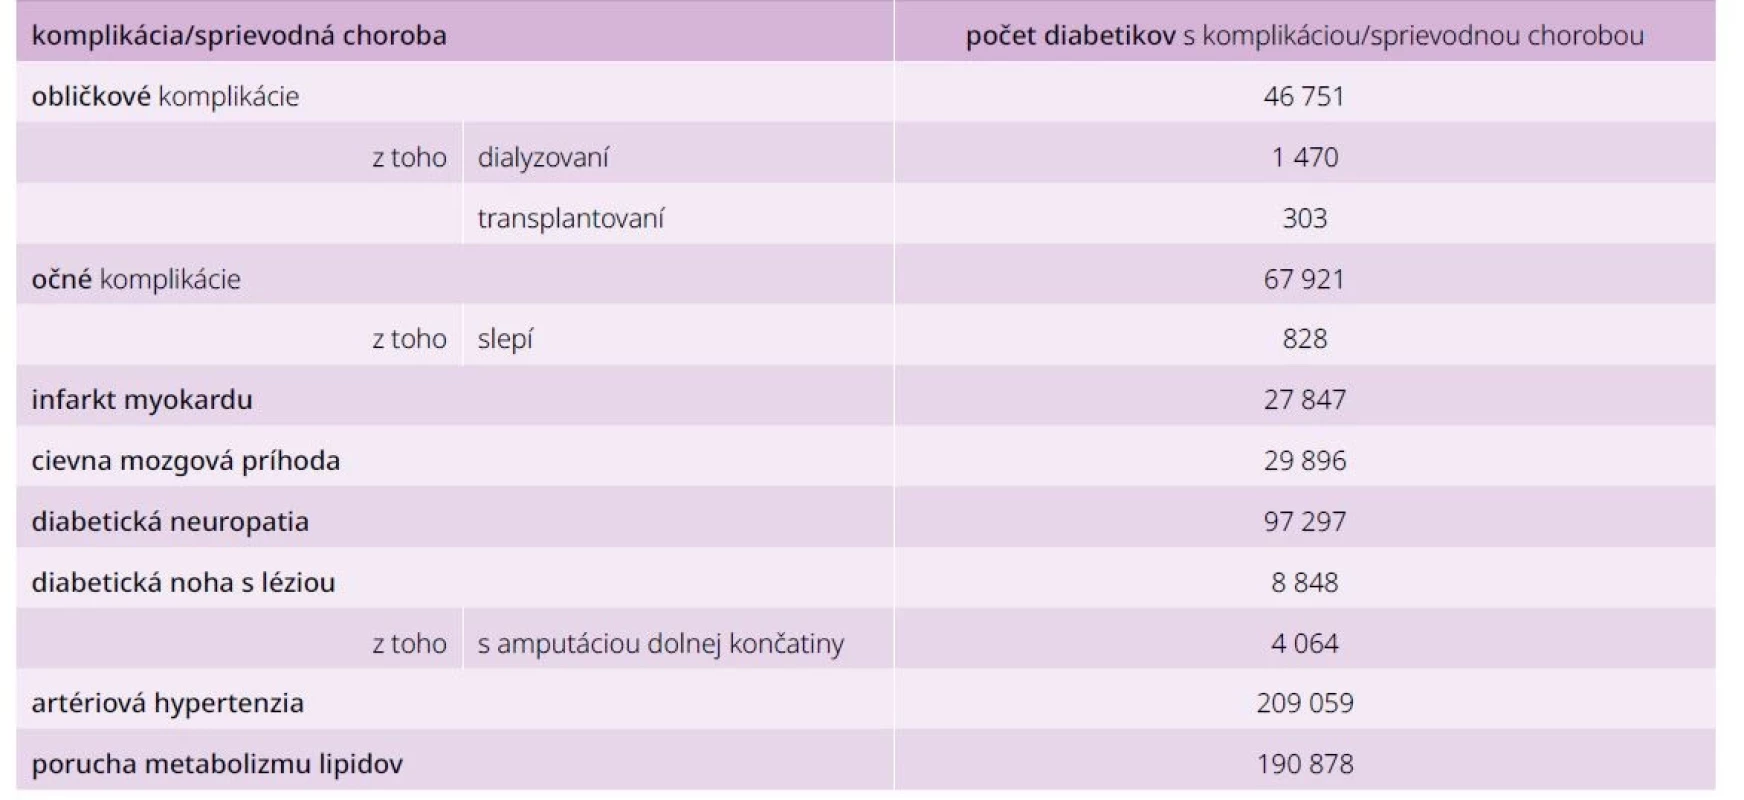 Počet komplikácií a sprievodných chorôb diabetes mellitus v roku 2020 v Slovenskej republike.
Upravené podľa [3]